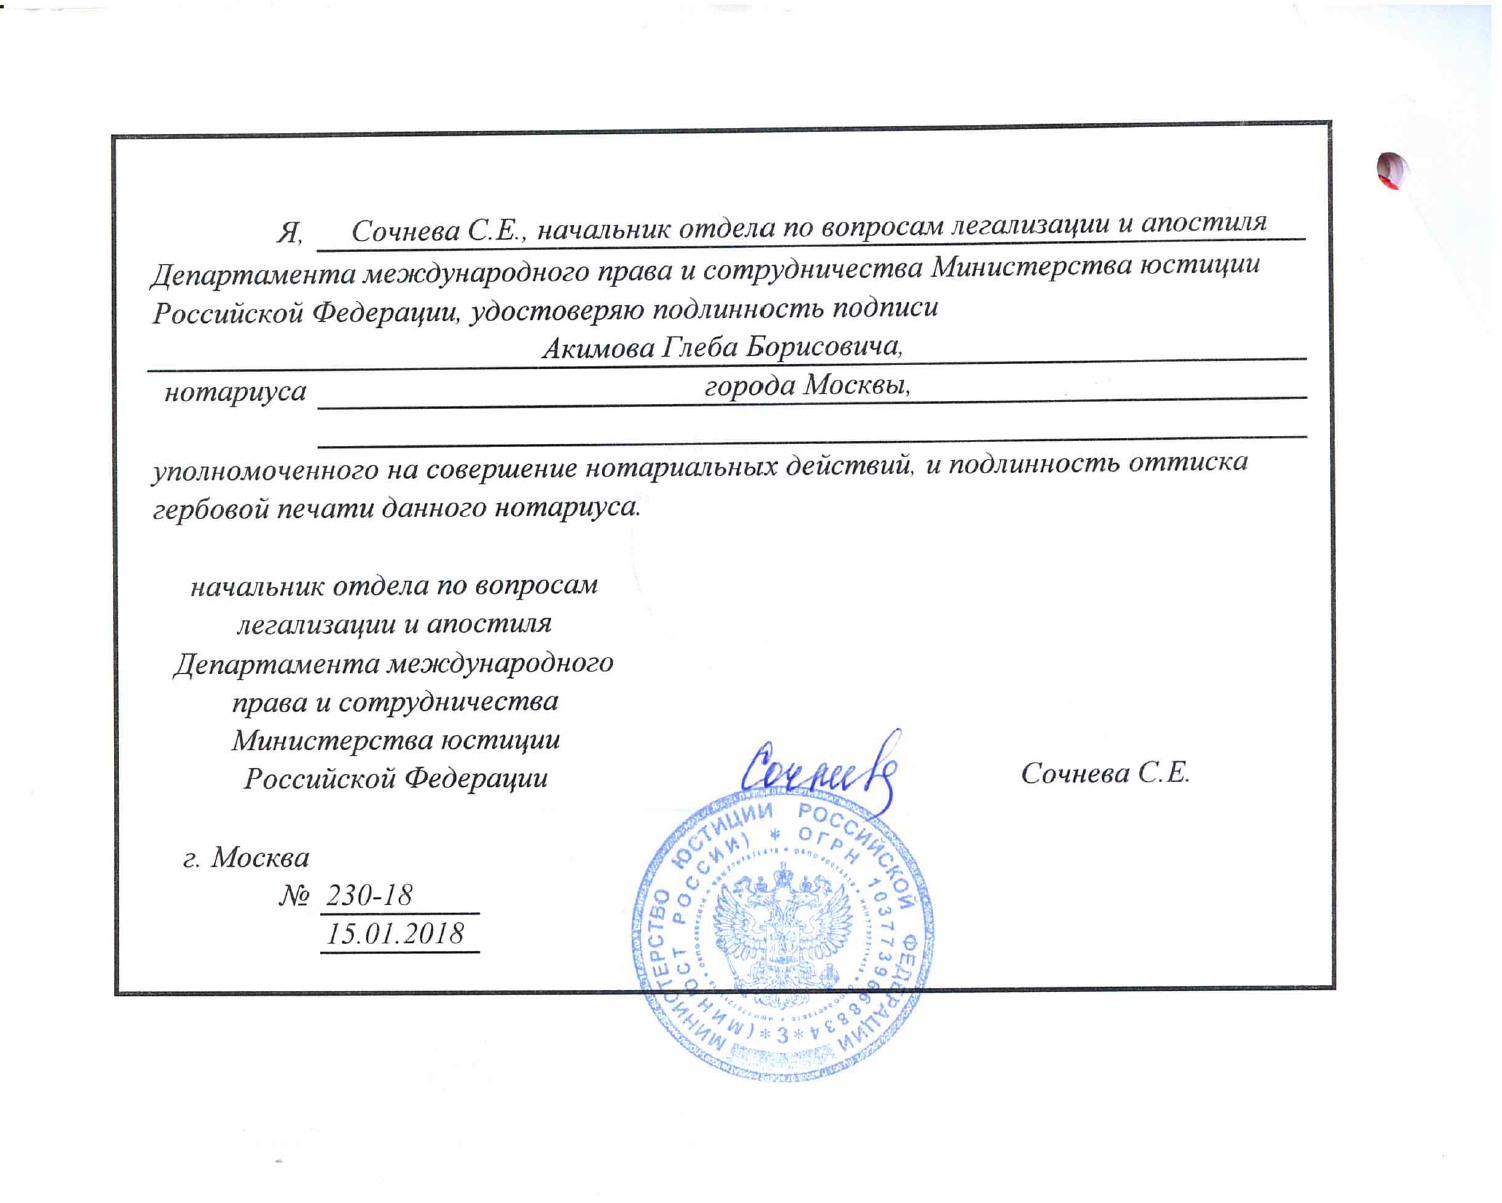 Образец консульской легализации выписки из ЕГРЮЛ российской компании для Саудовской Аравии